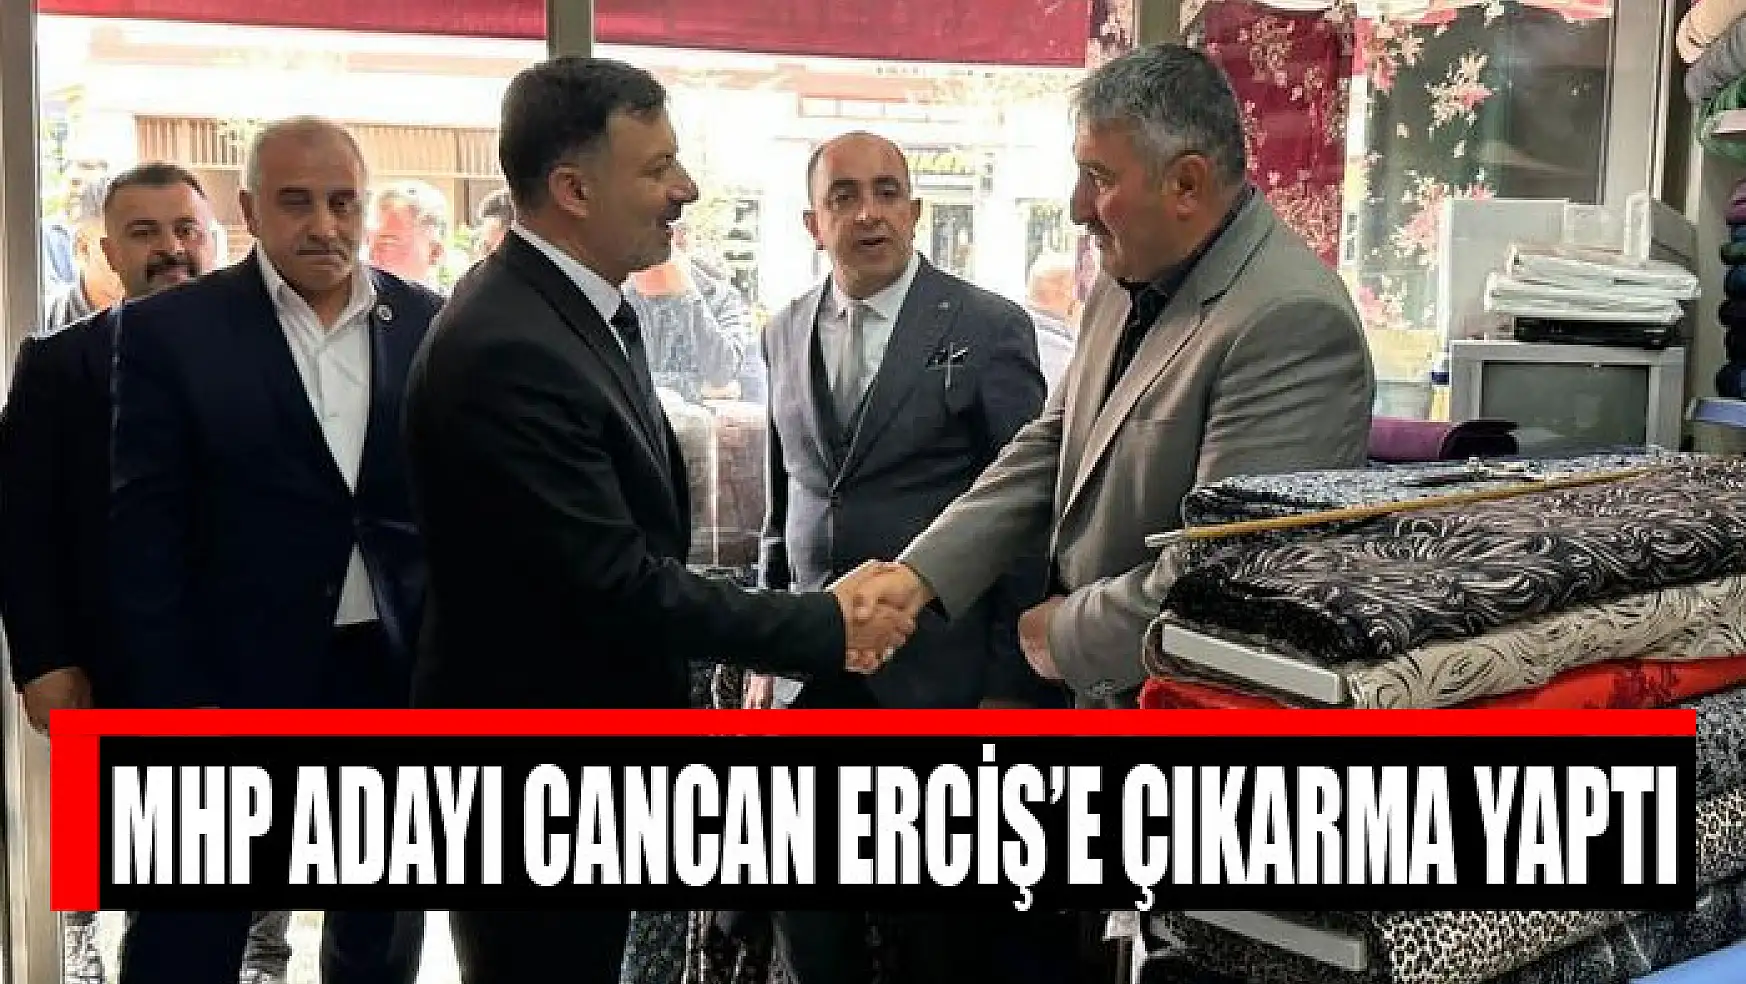 MHP adayı Cancan Erciş'e çıkarma yaptı